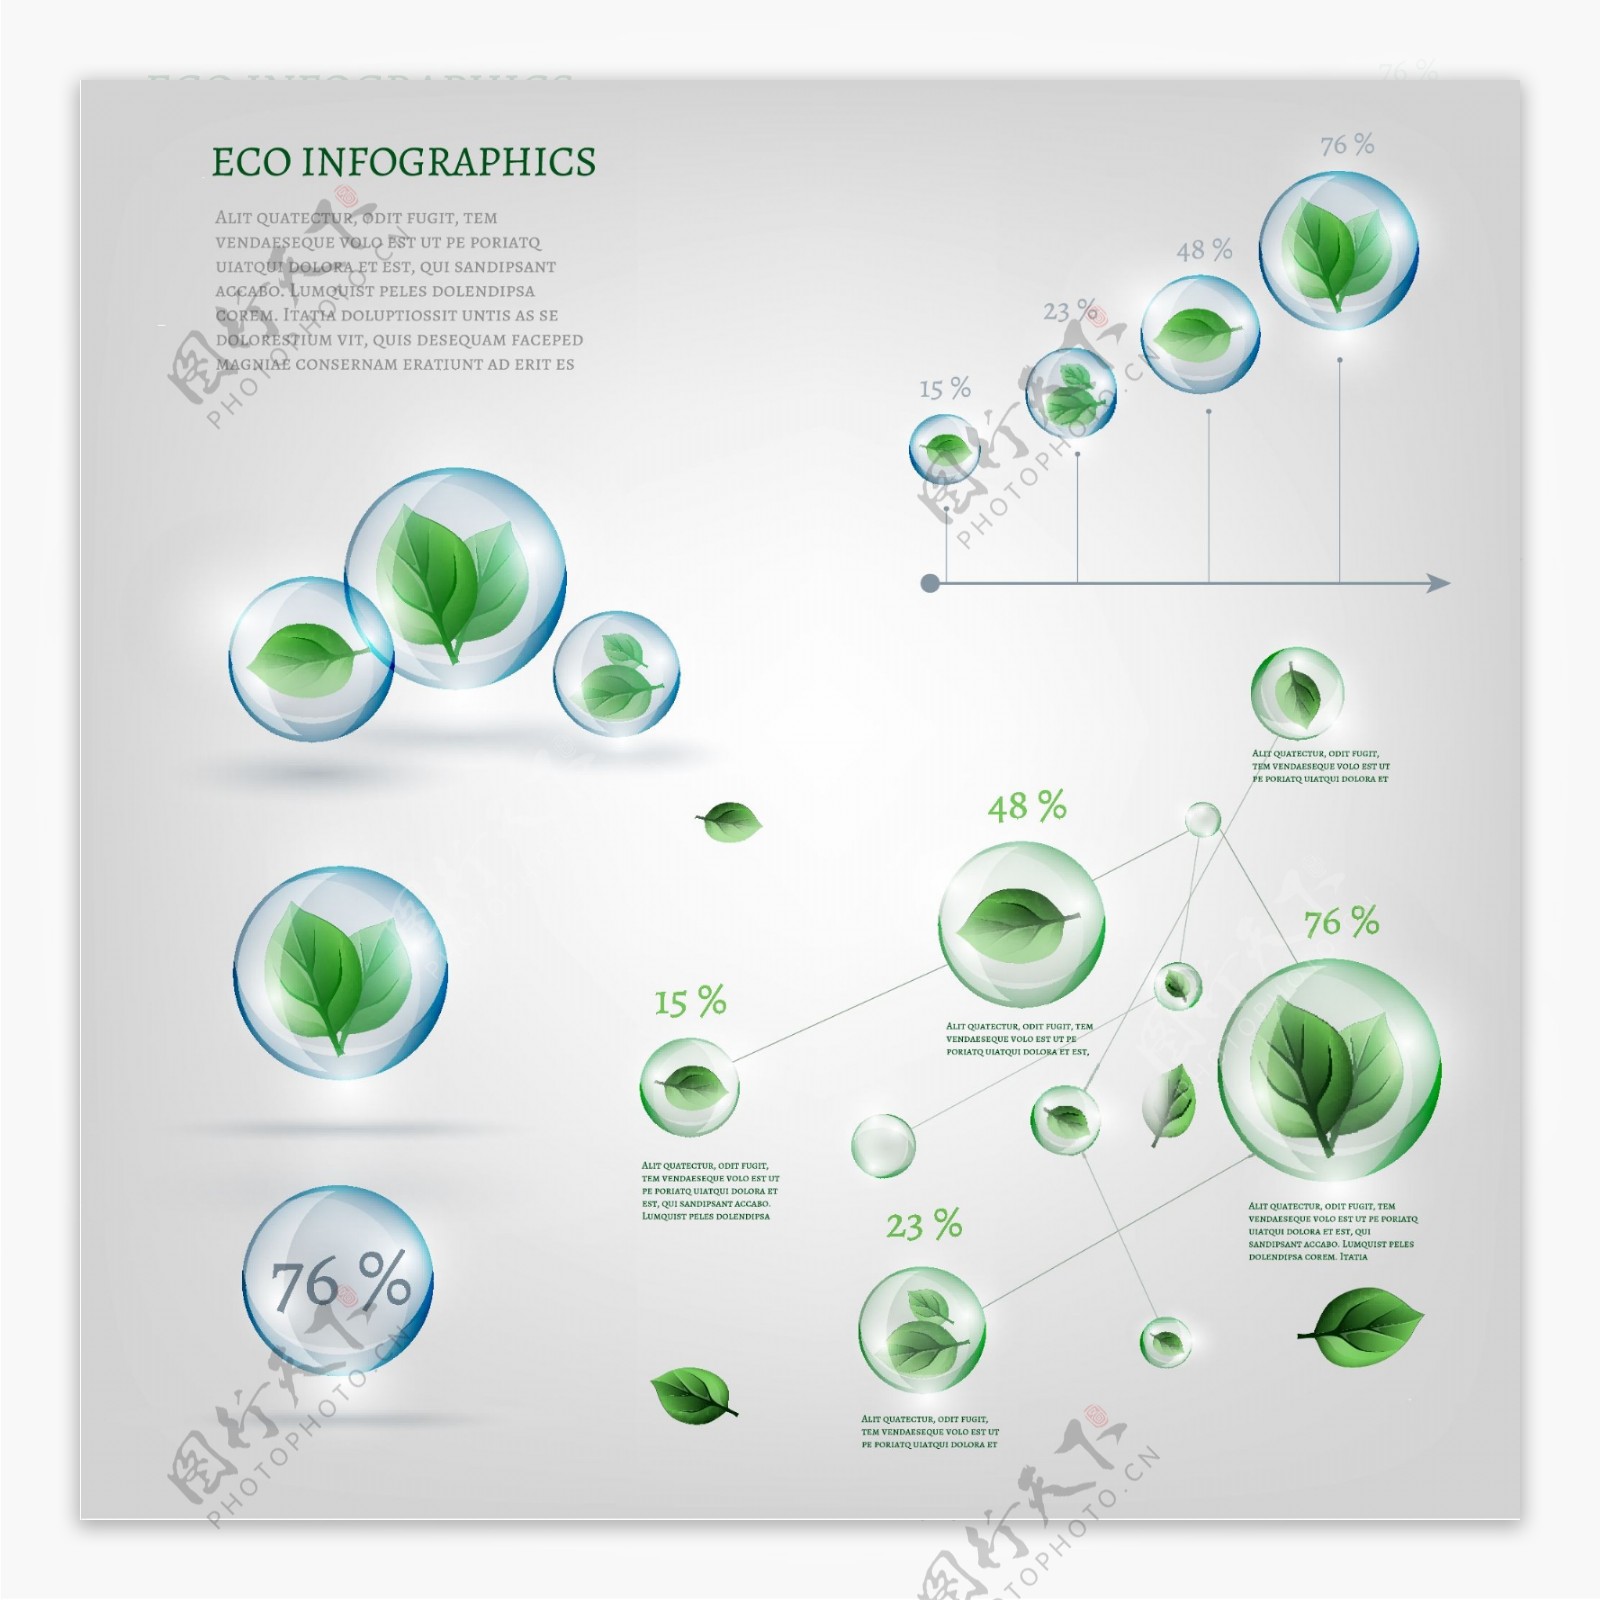 创意绿色环保图表设计矢量素材